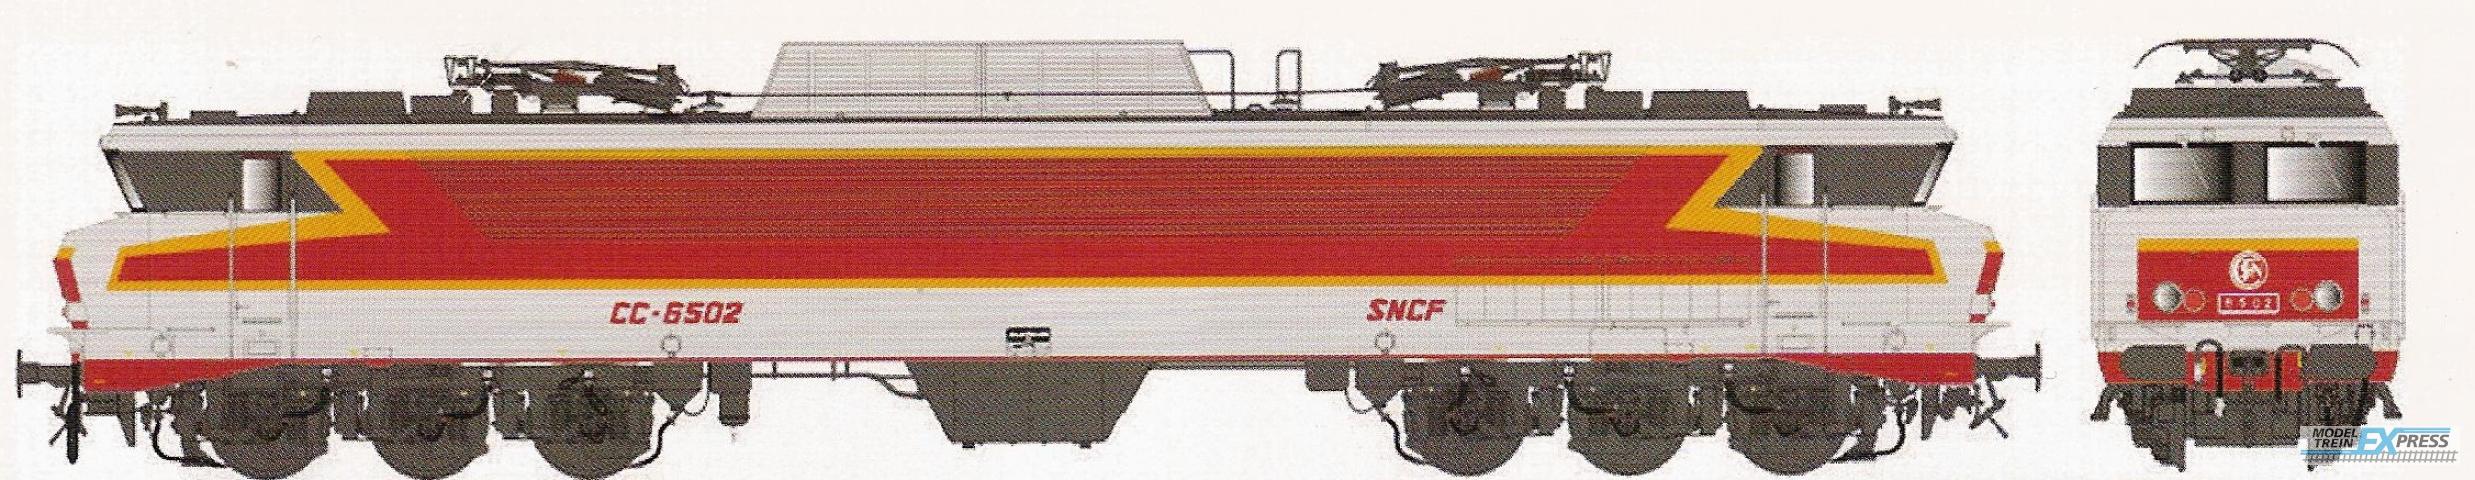 LS Models 10820S CC 6502, metaalgrijs/rood/oranje, TEE, platen, Beffara logo, zuidoost  /  Ep. IV  /  SNCF  /  HO  /  AC SOUND  /  1 P.